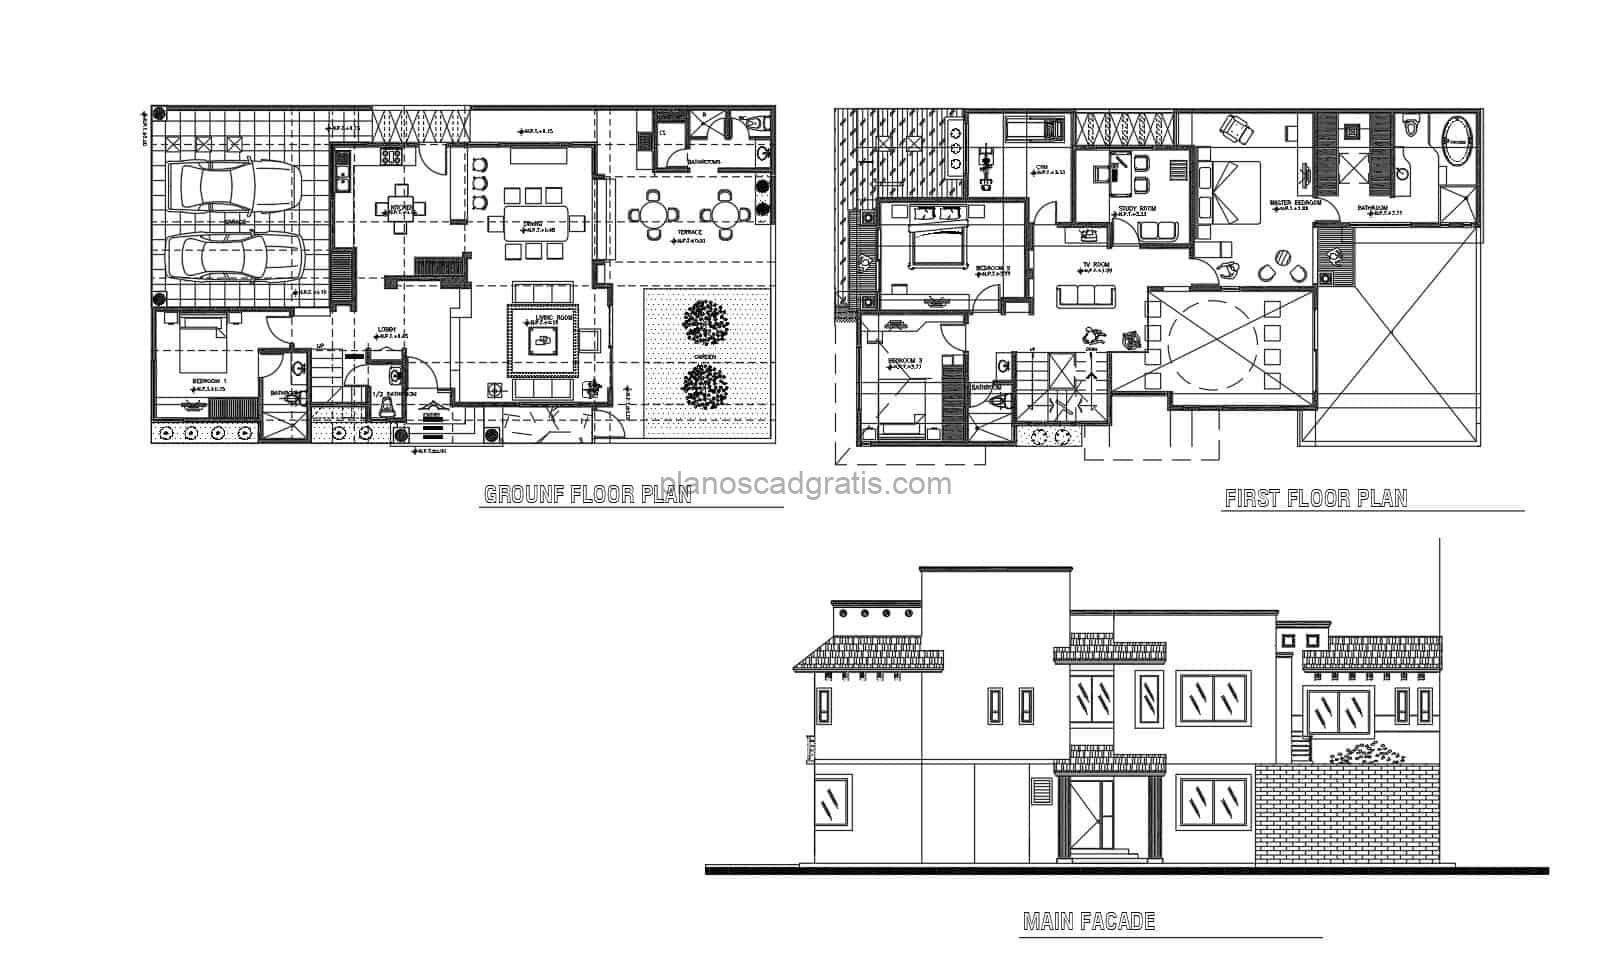 plano de autocad dwg de residencia de dos niveles con cuatro habitaciones y area de juegos en el segundo nivel, distribución basica con dimensiones y bloques de autocad en interior, plano para descarga gratis en formato dwg